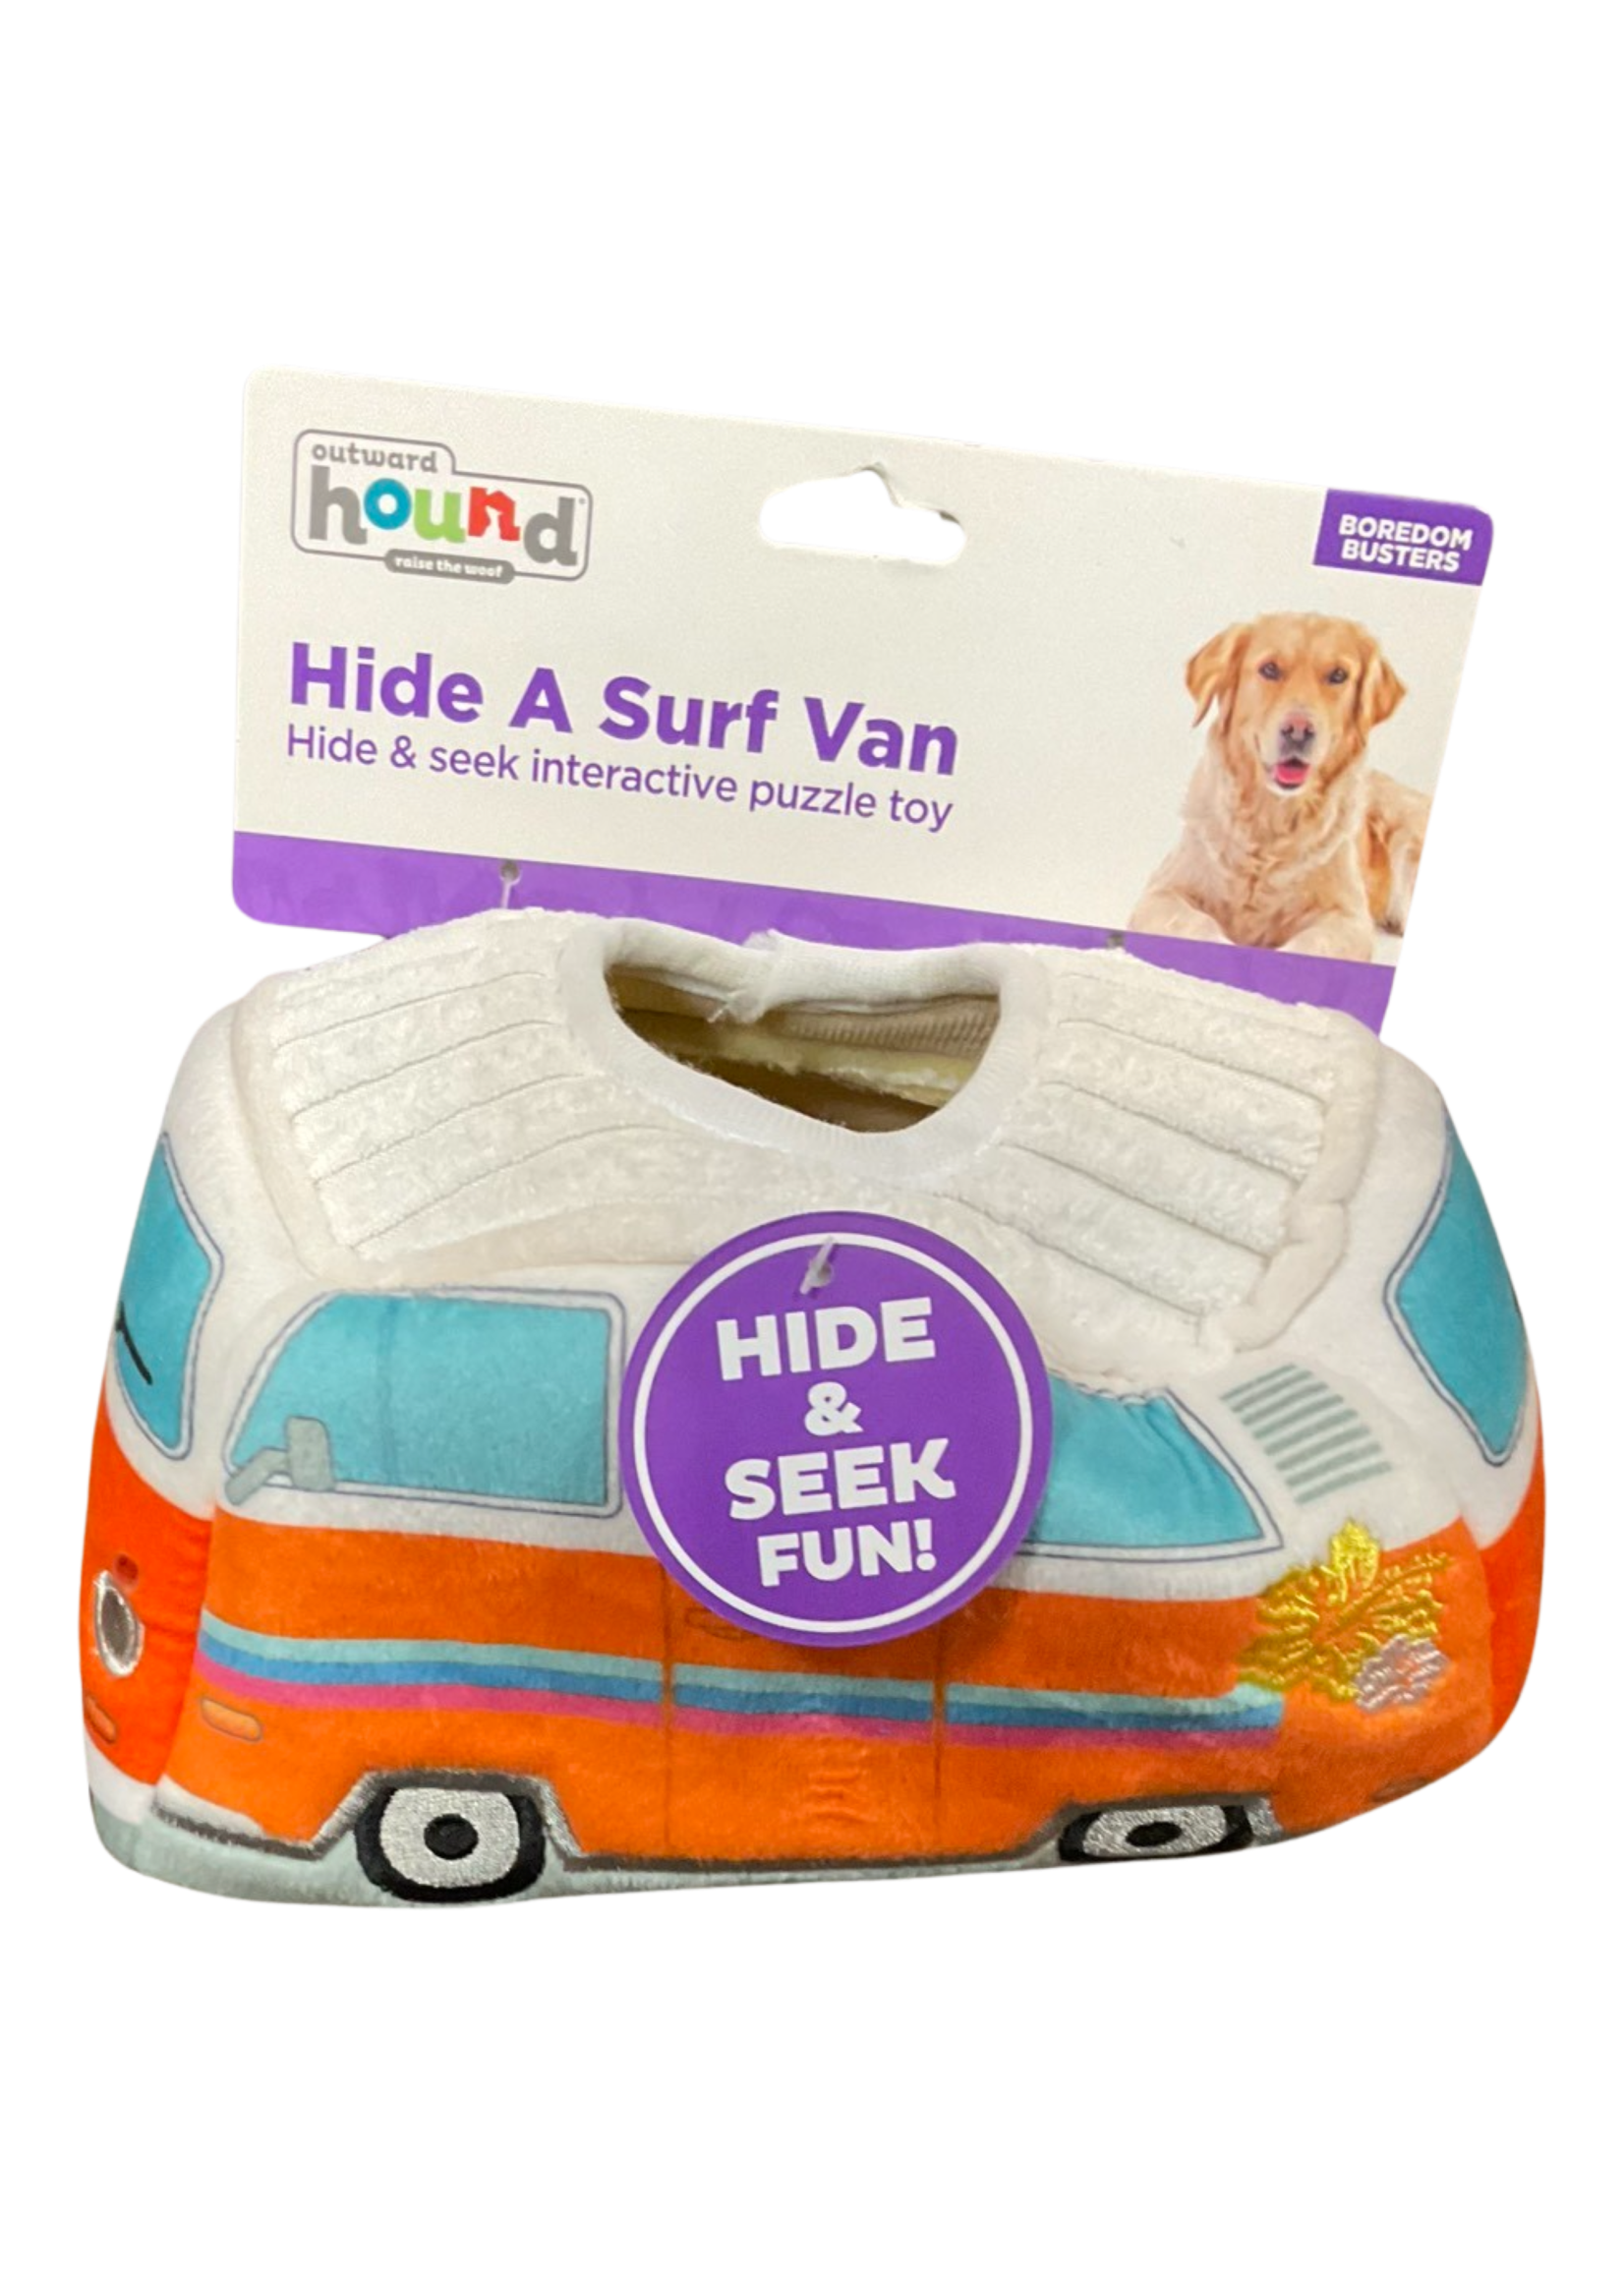 Outward Hound Hide A Surf Van